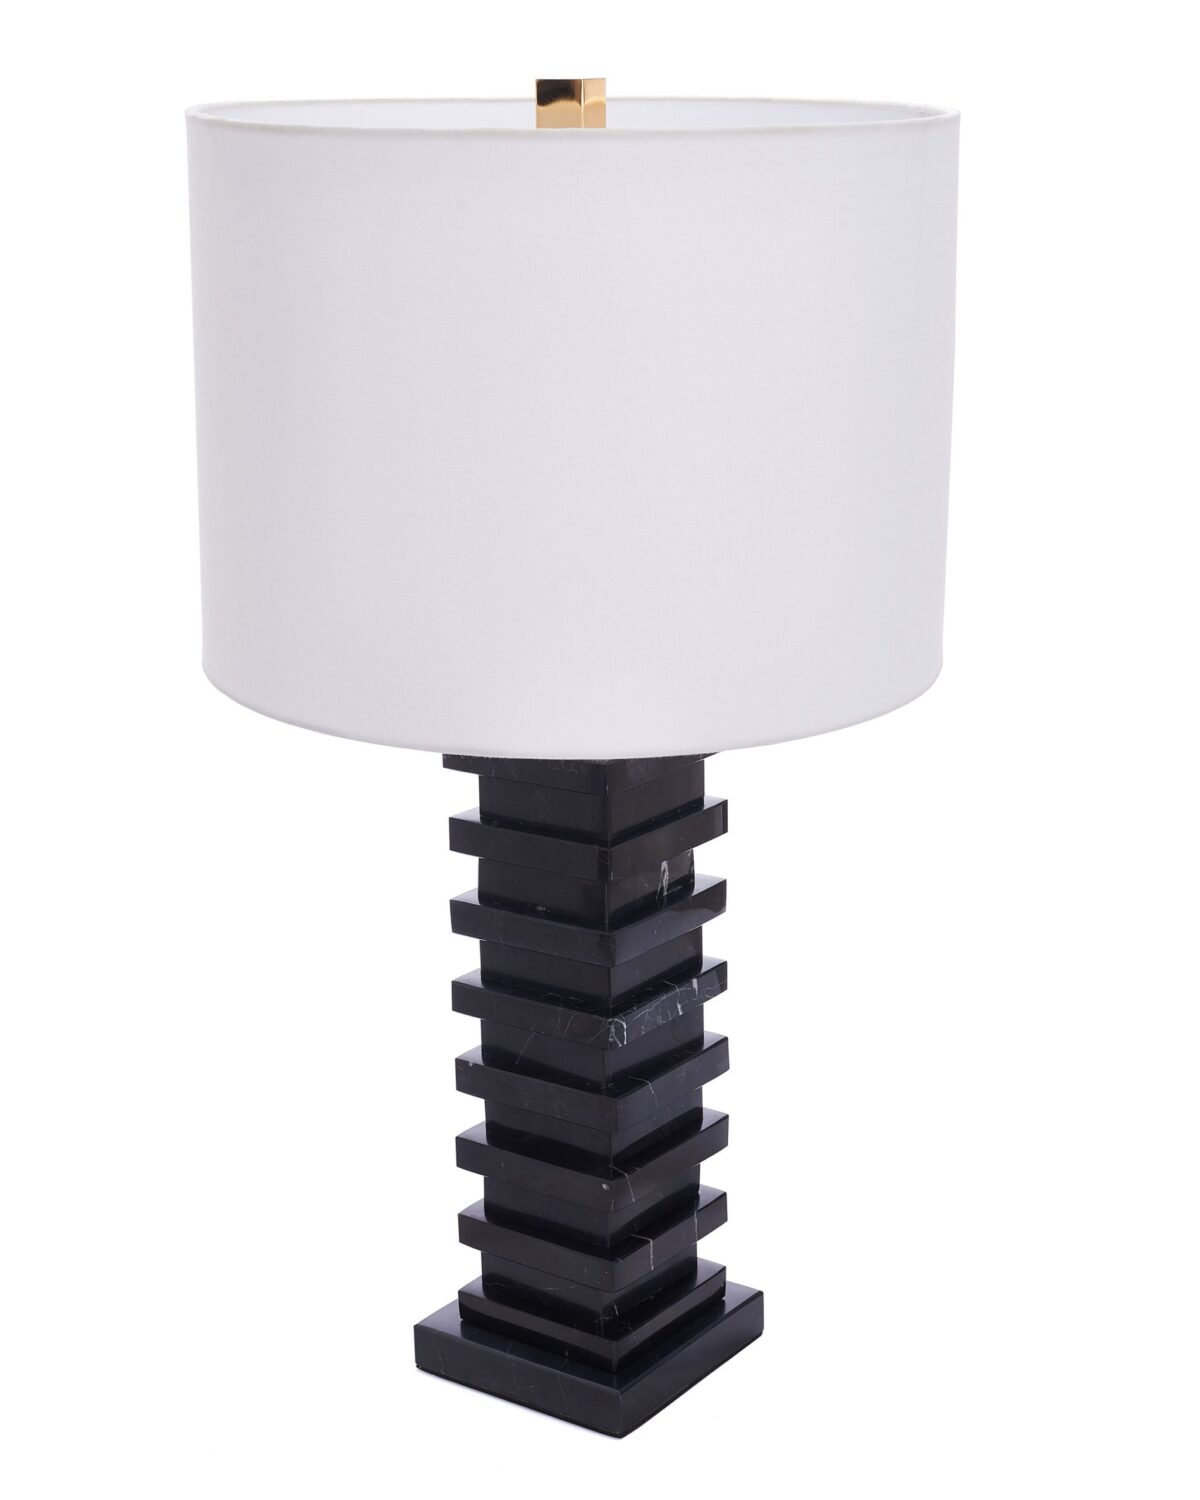 Чёрная настольная лампа "Анабель" сделана в виде стопки плиток из черного мрамора